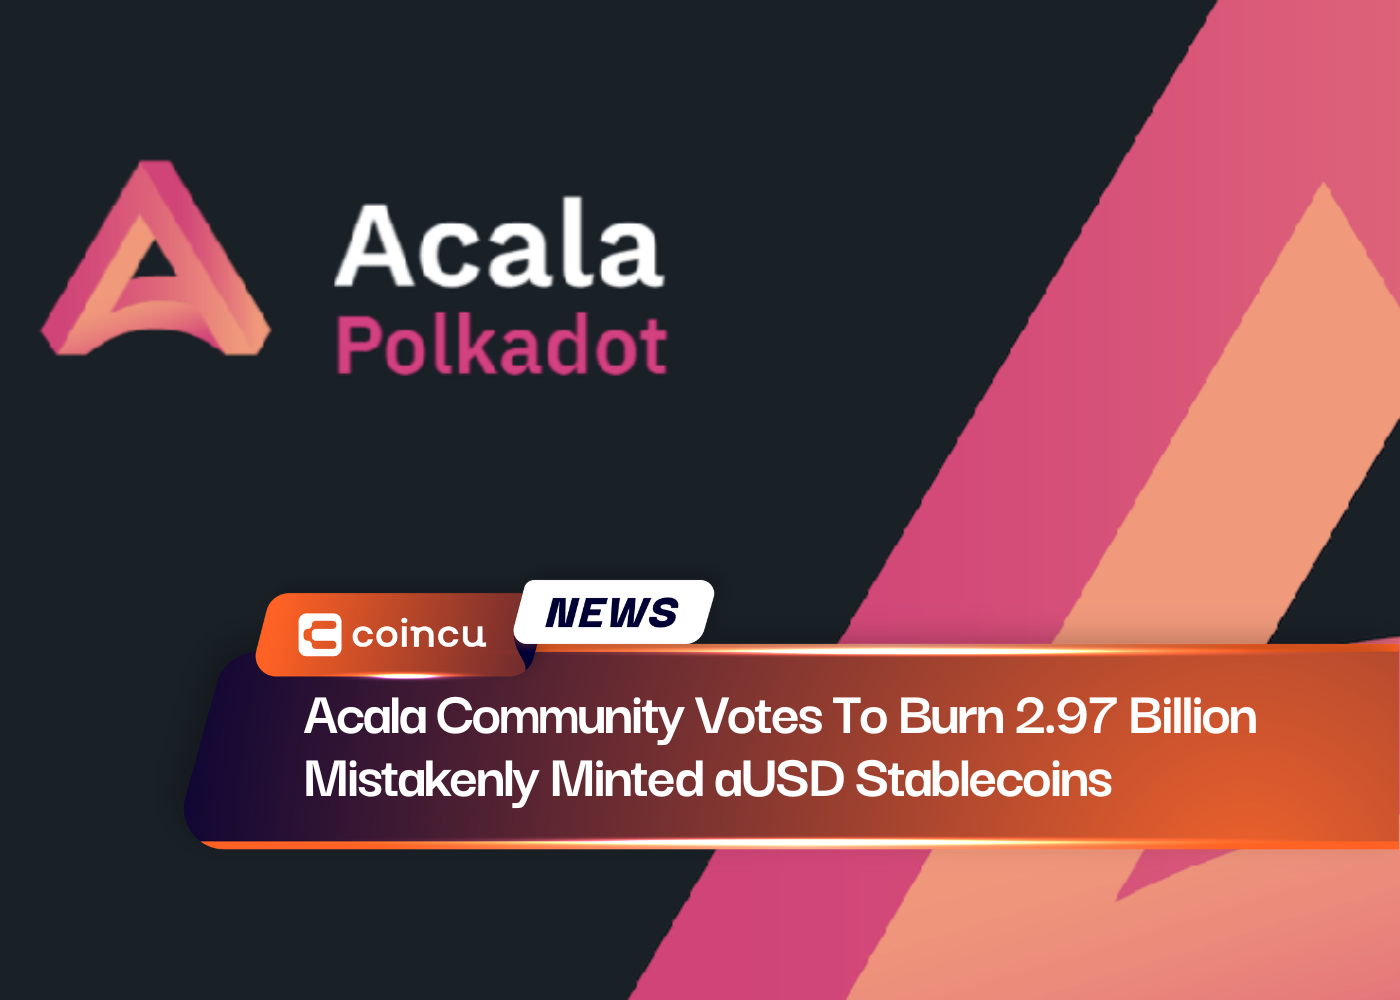 La communauté Acala vote pour brûler 2.97 milliards de pièces stables en USD frappées par erreur